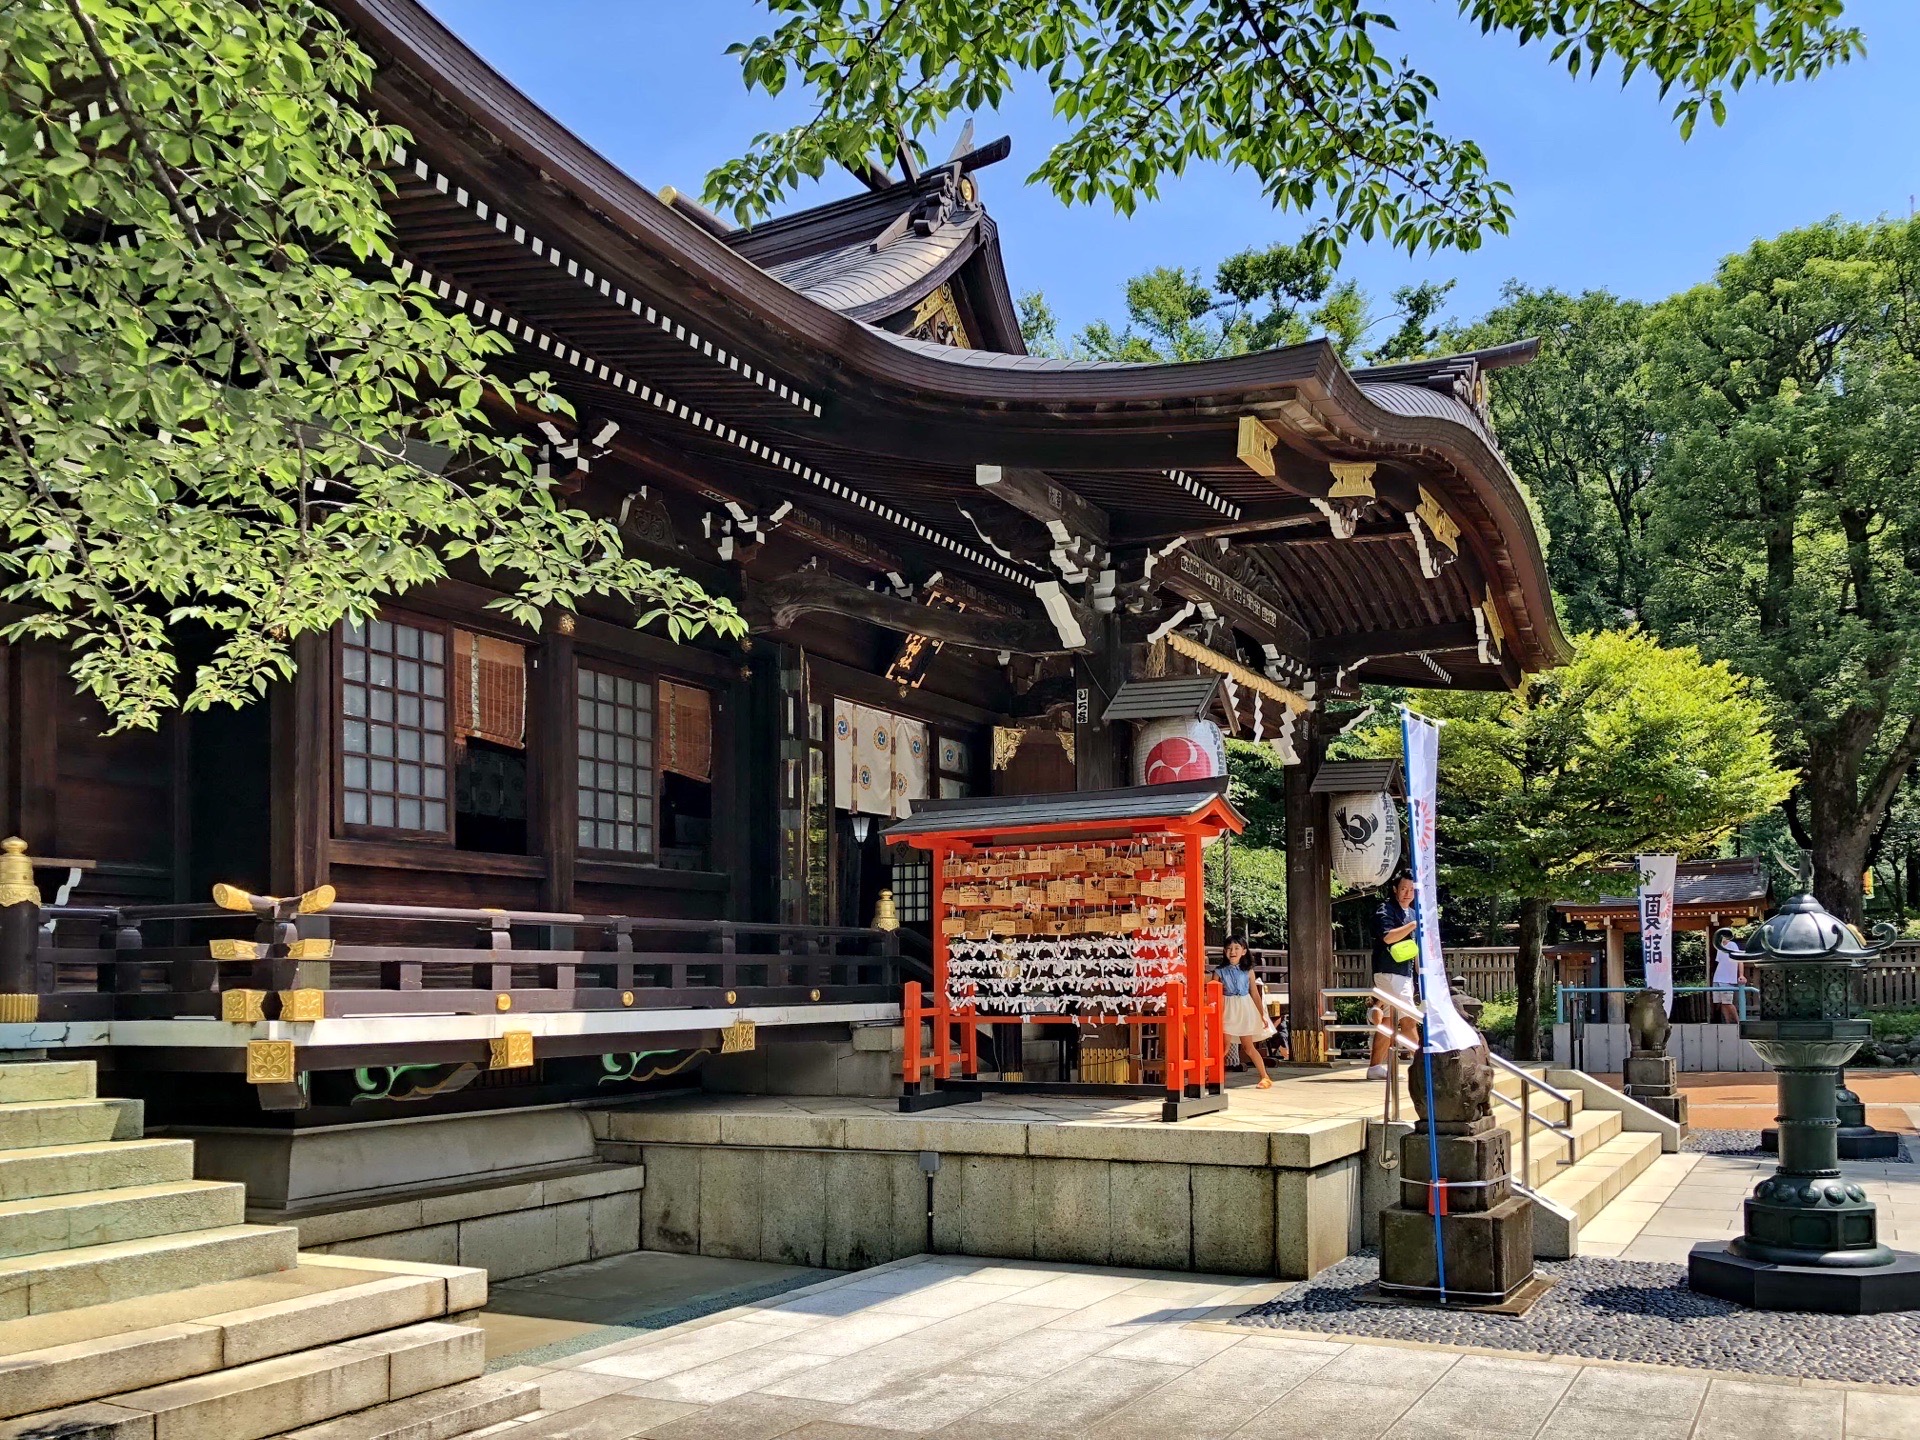 熊野三山“世界文化遗产朝圣之路二”之熊野神社在各地的3000分社之一，是当地的守护神。供奉櫛御気野大